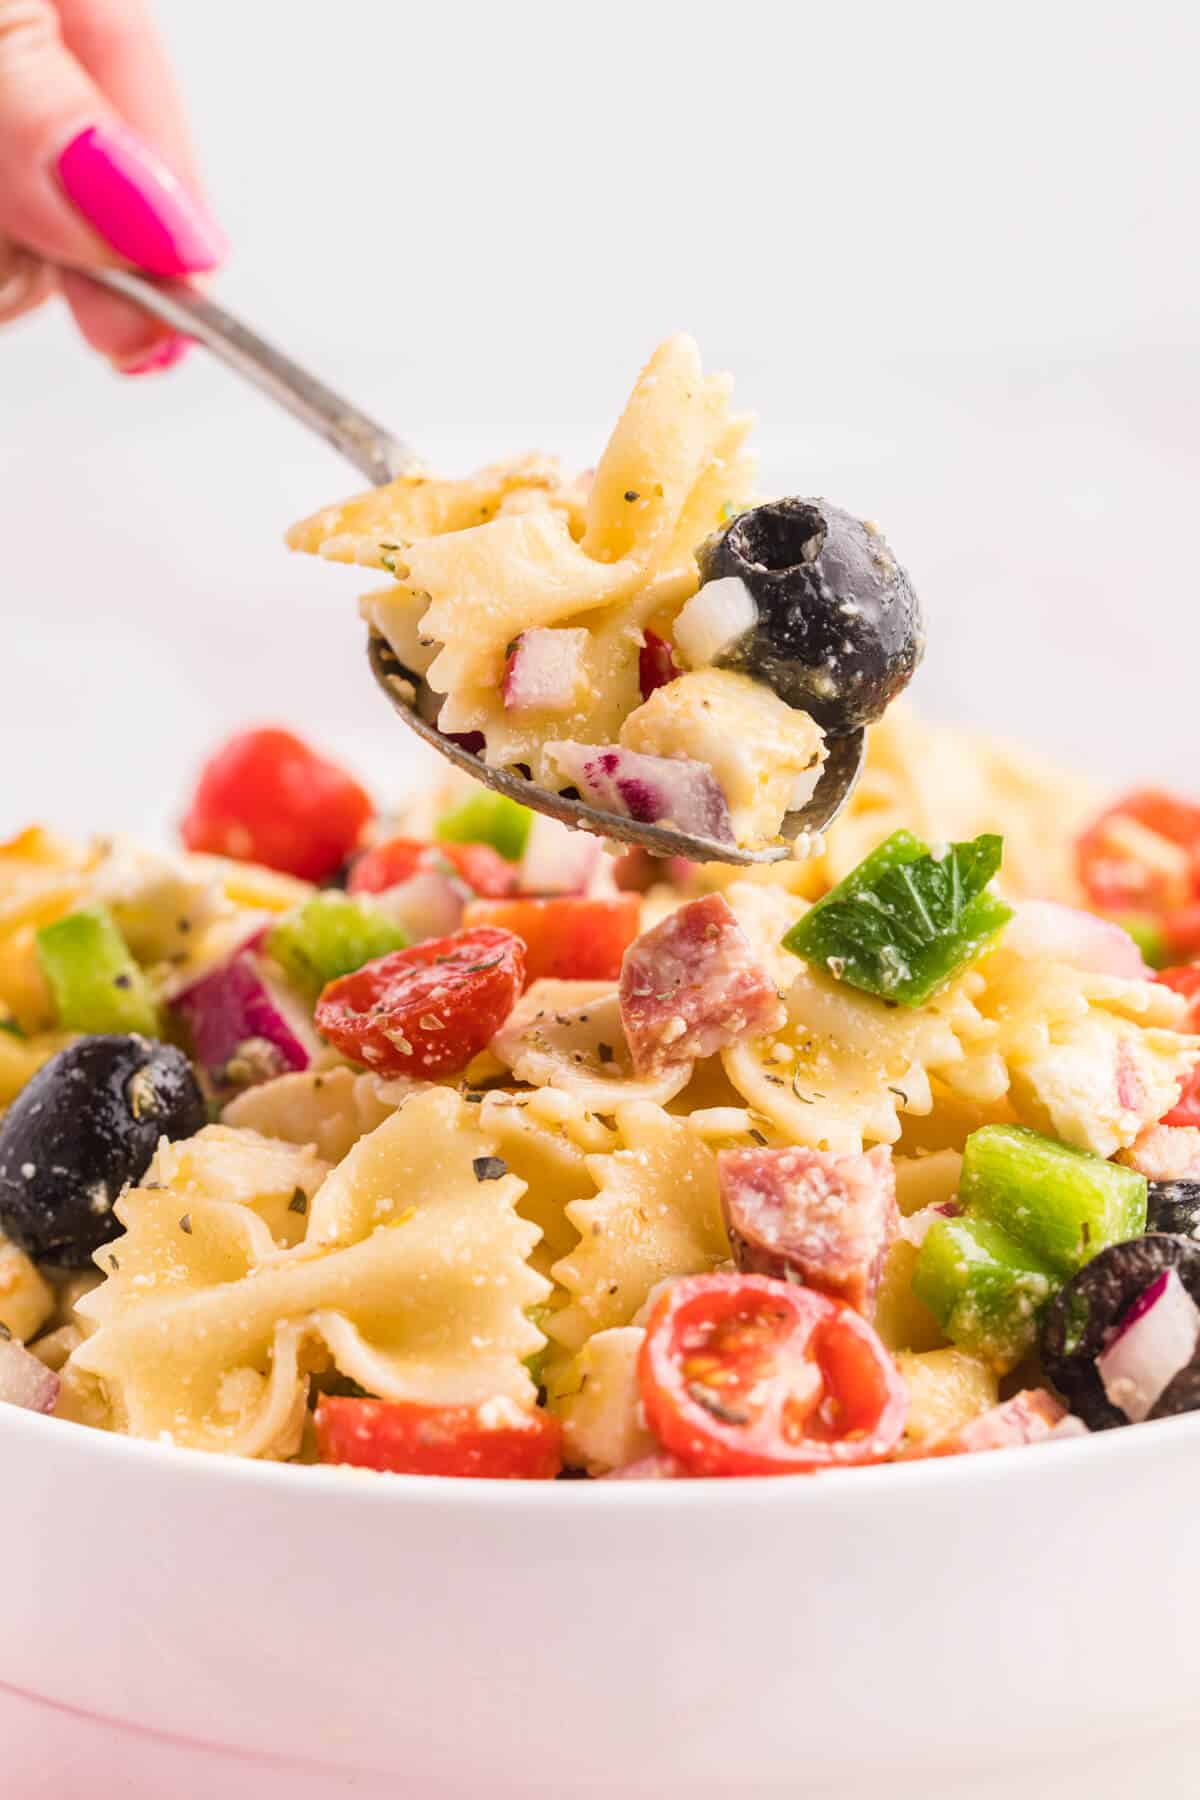 Italian pasta salad on a spoon.